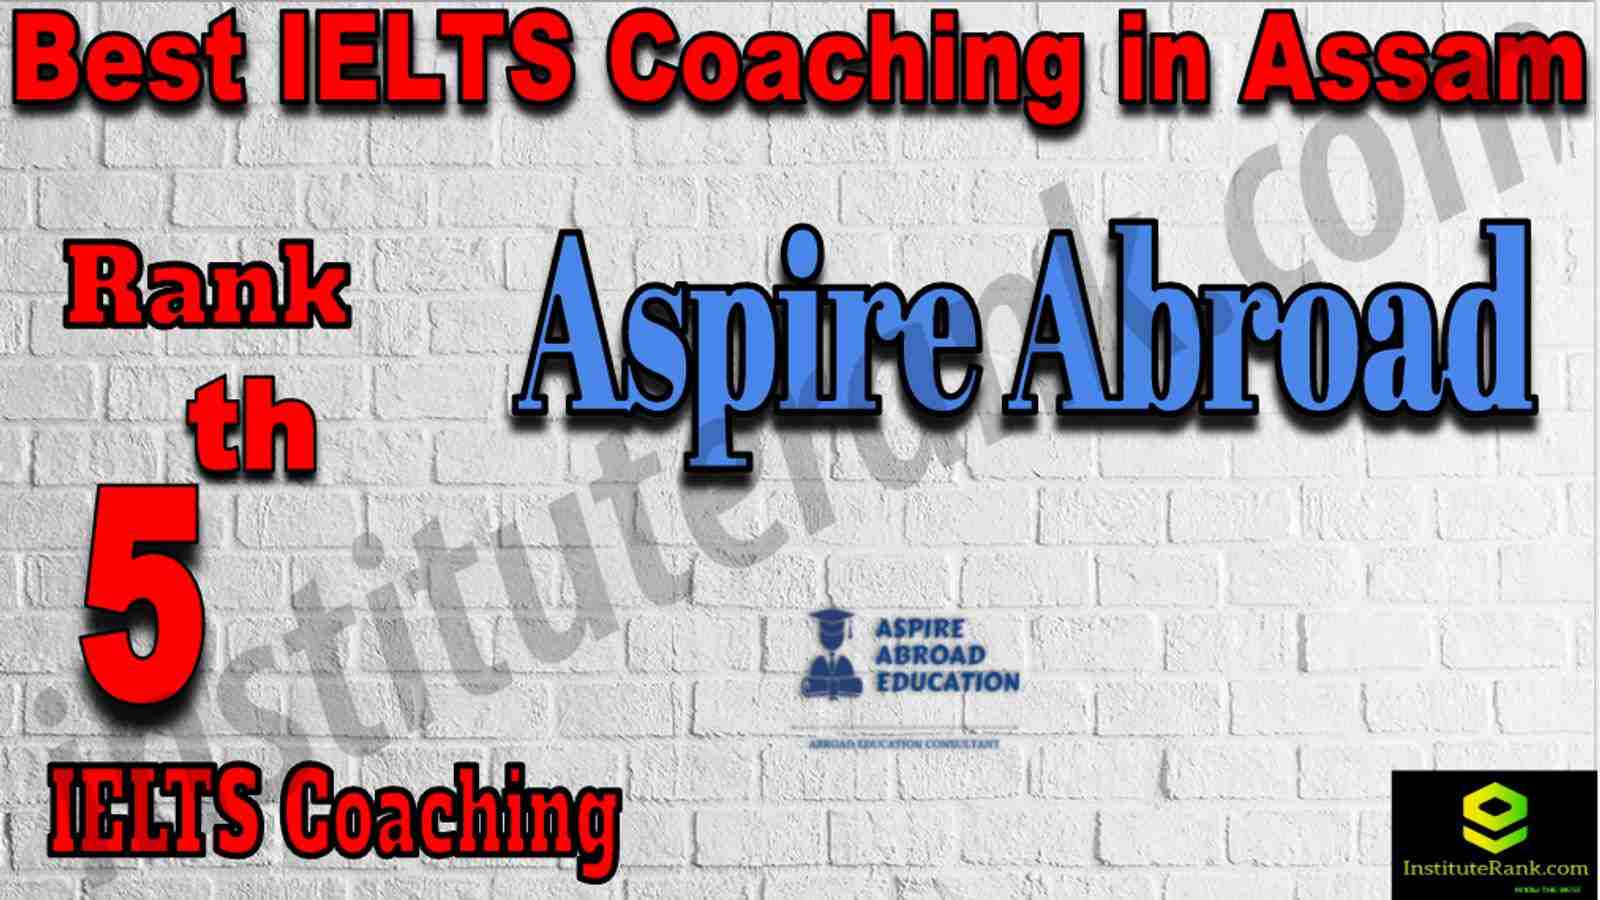 5th Best IELTS Coaching in Assam